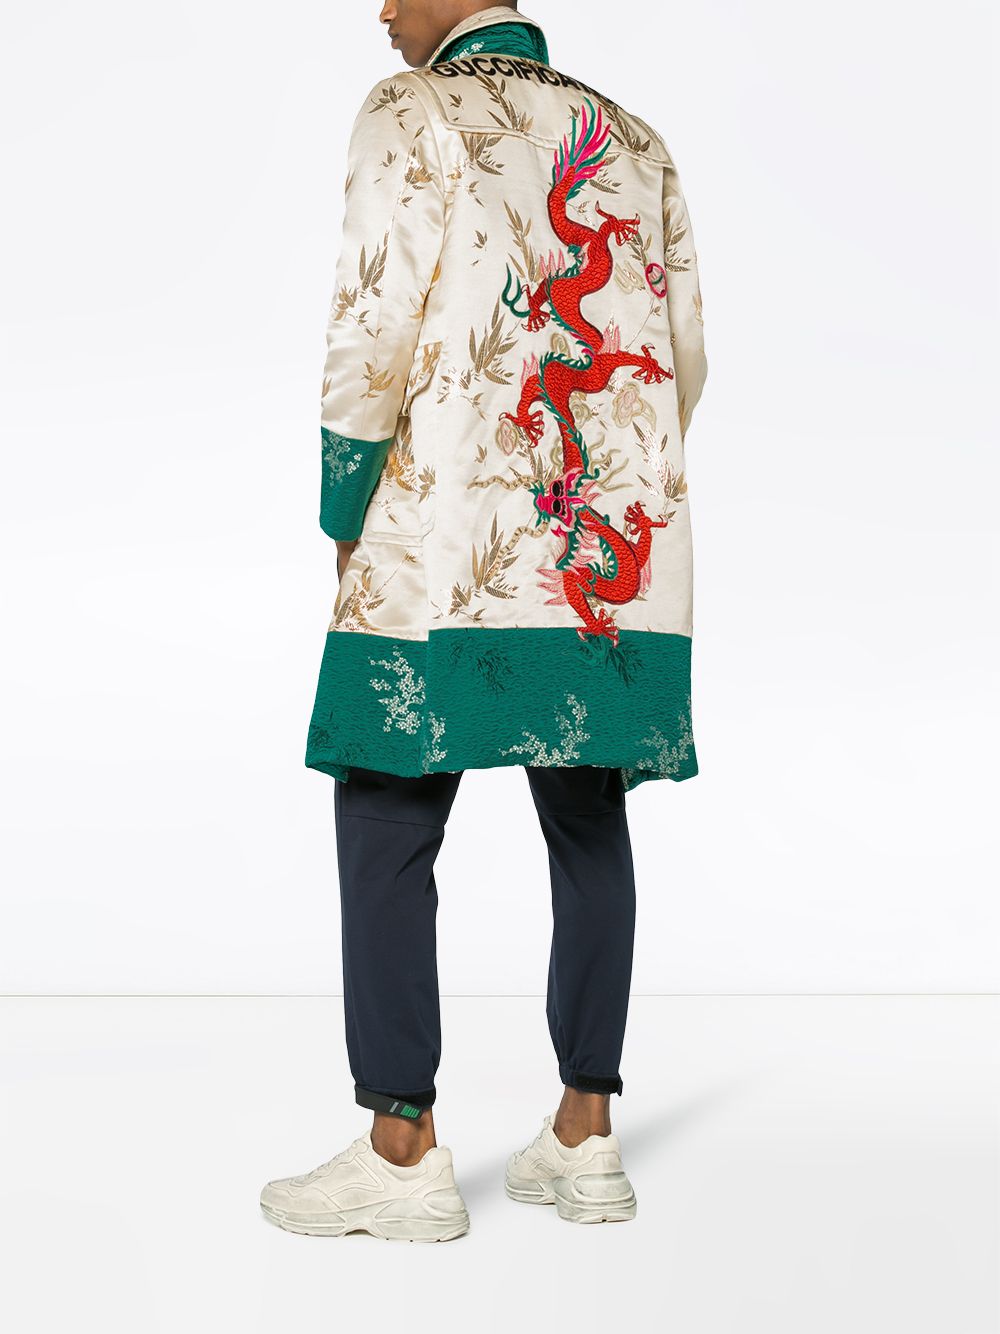 фото Gucci жаккардовое пальто с вышивкой дракона